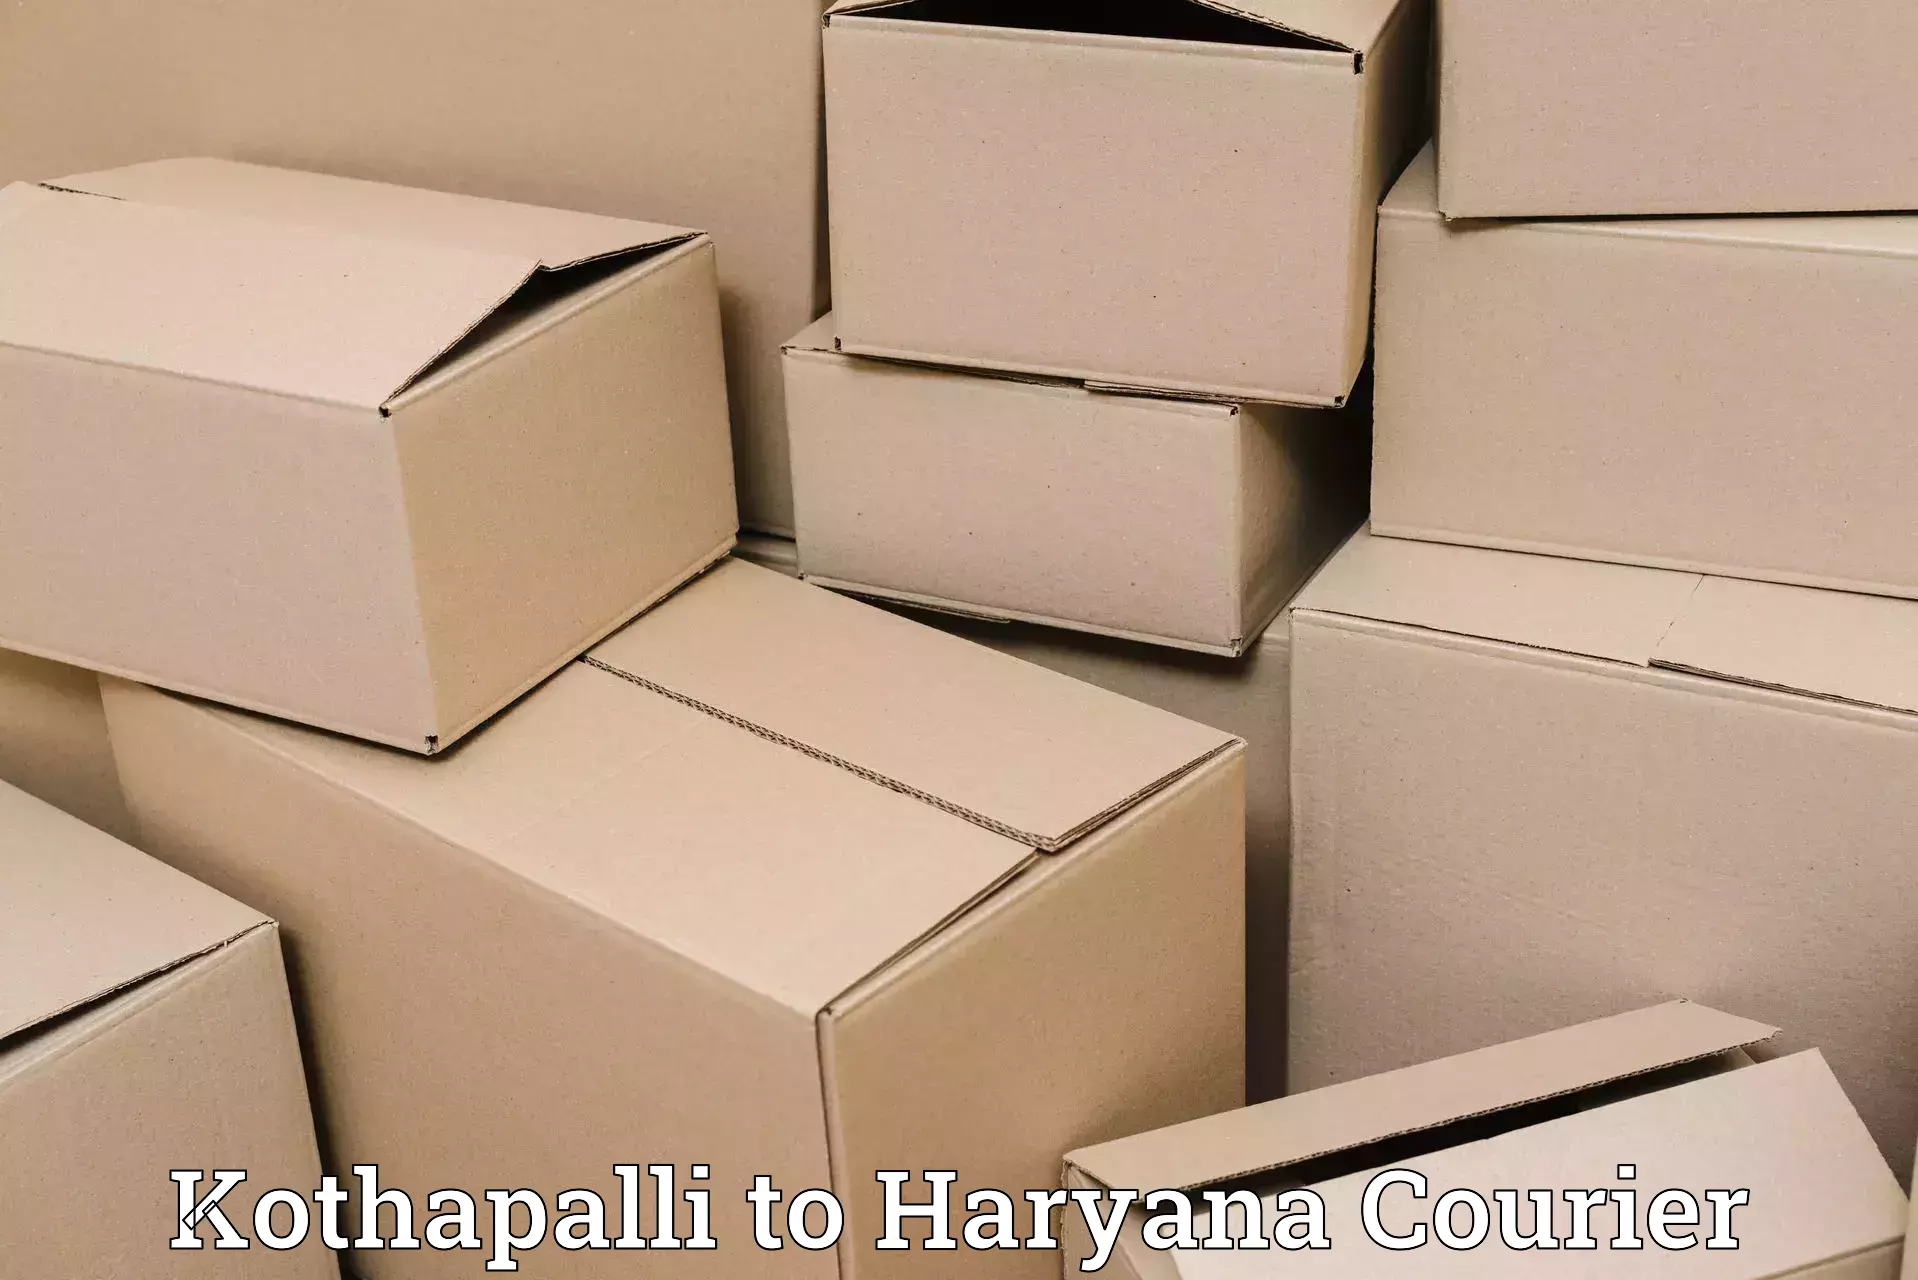 Affordable parcel service Kothapalli to Assandh